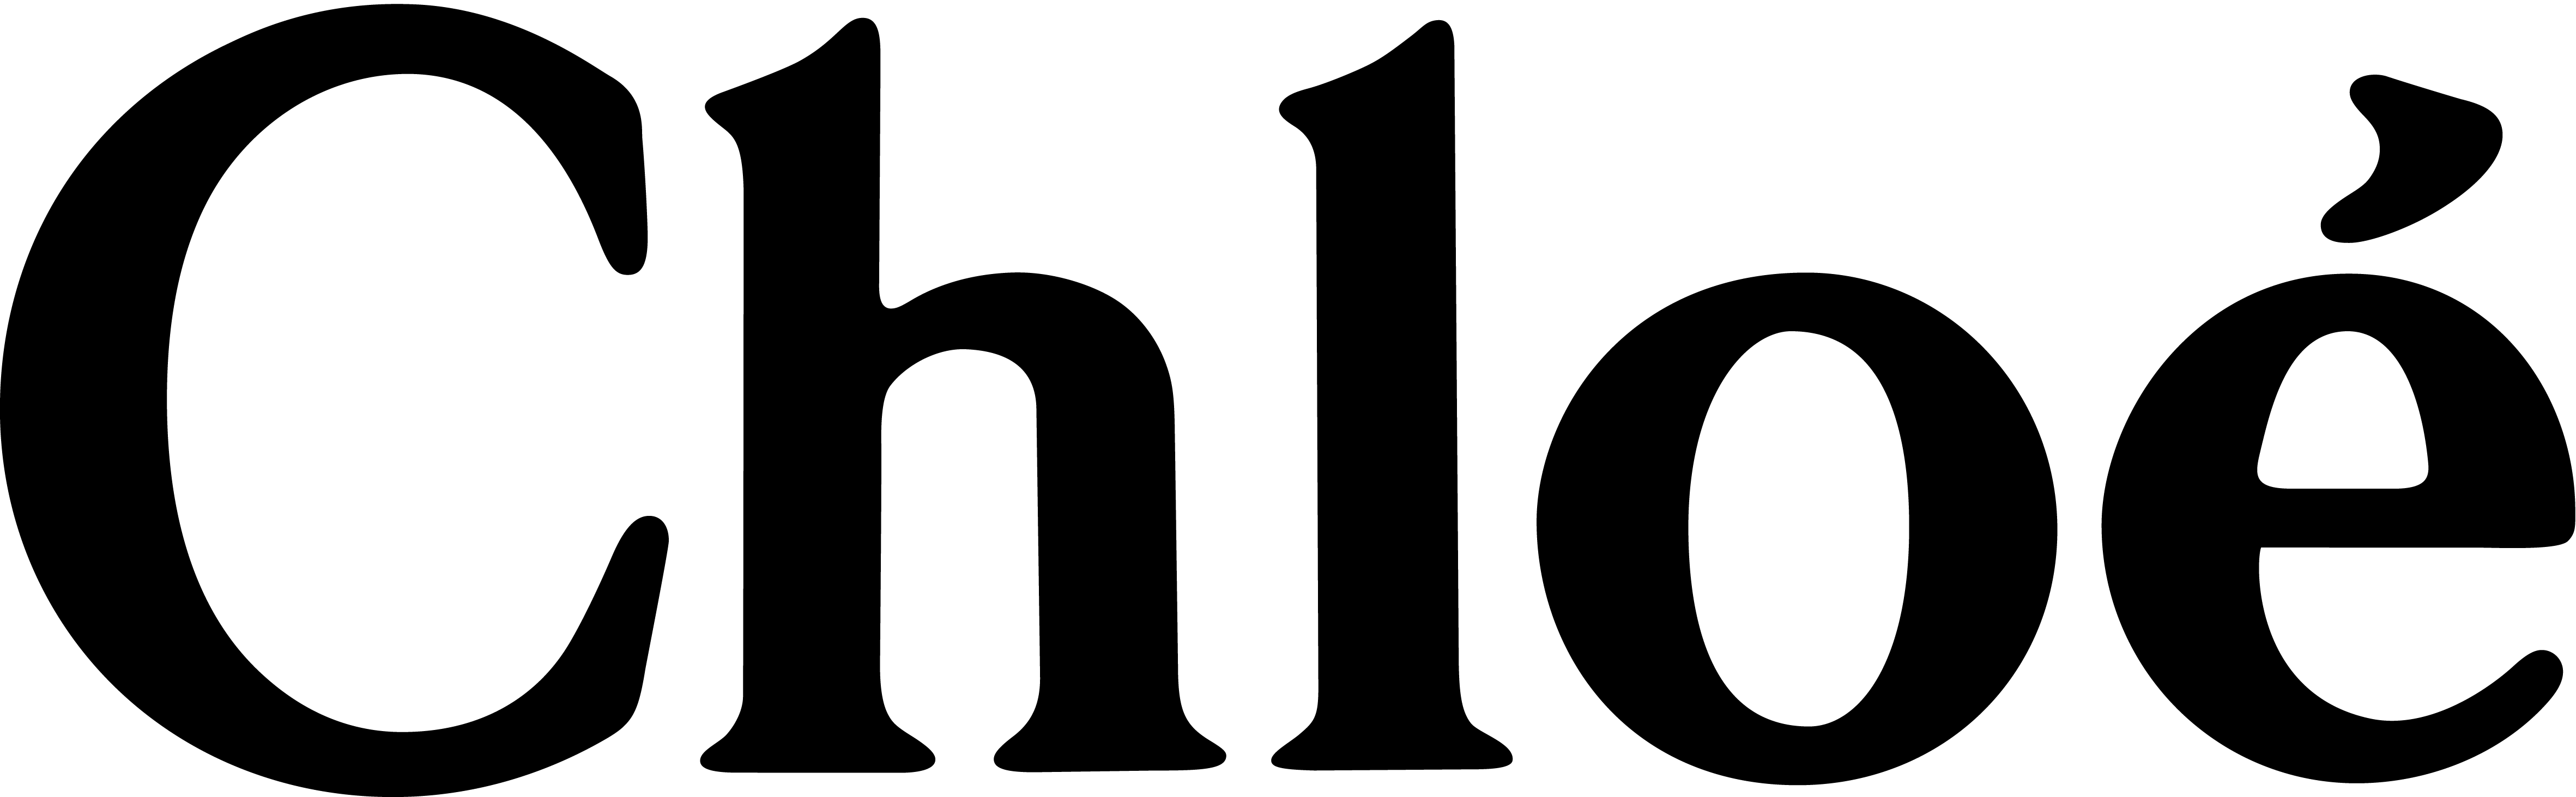 logo-CHLOE